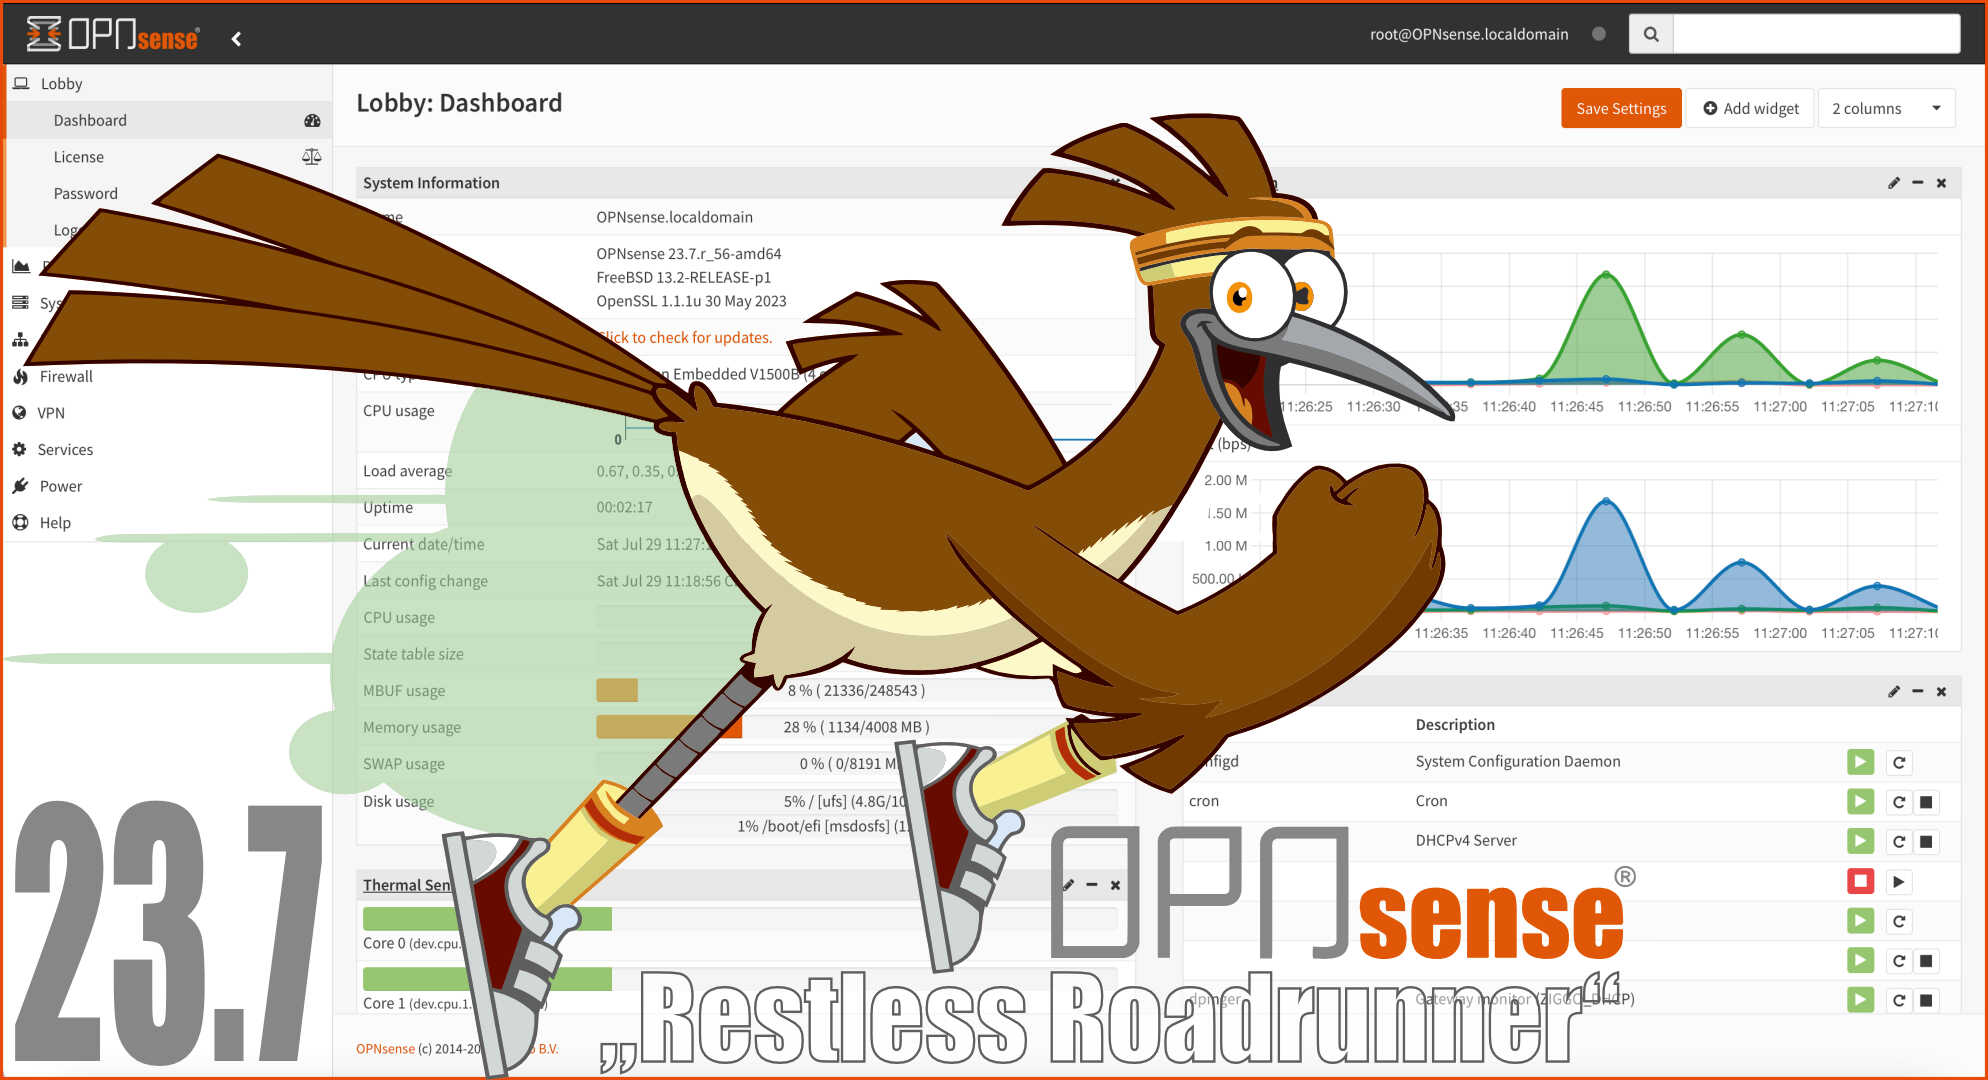 OPNsense® 23.7 Restless Roadrunner released